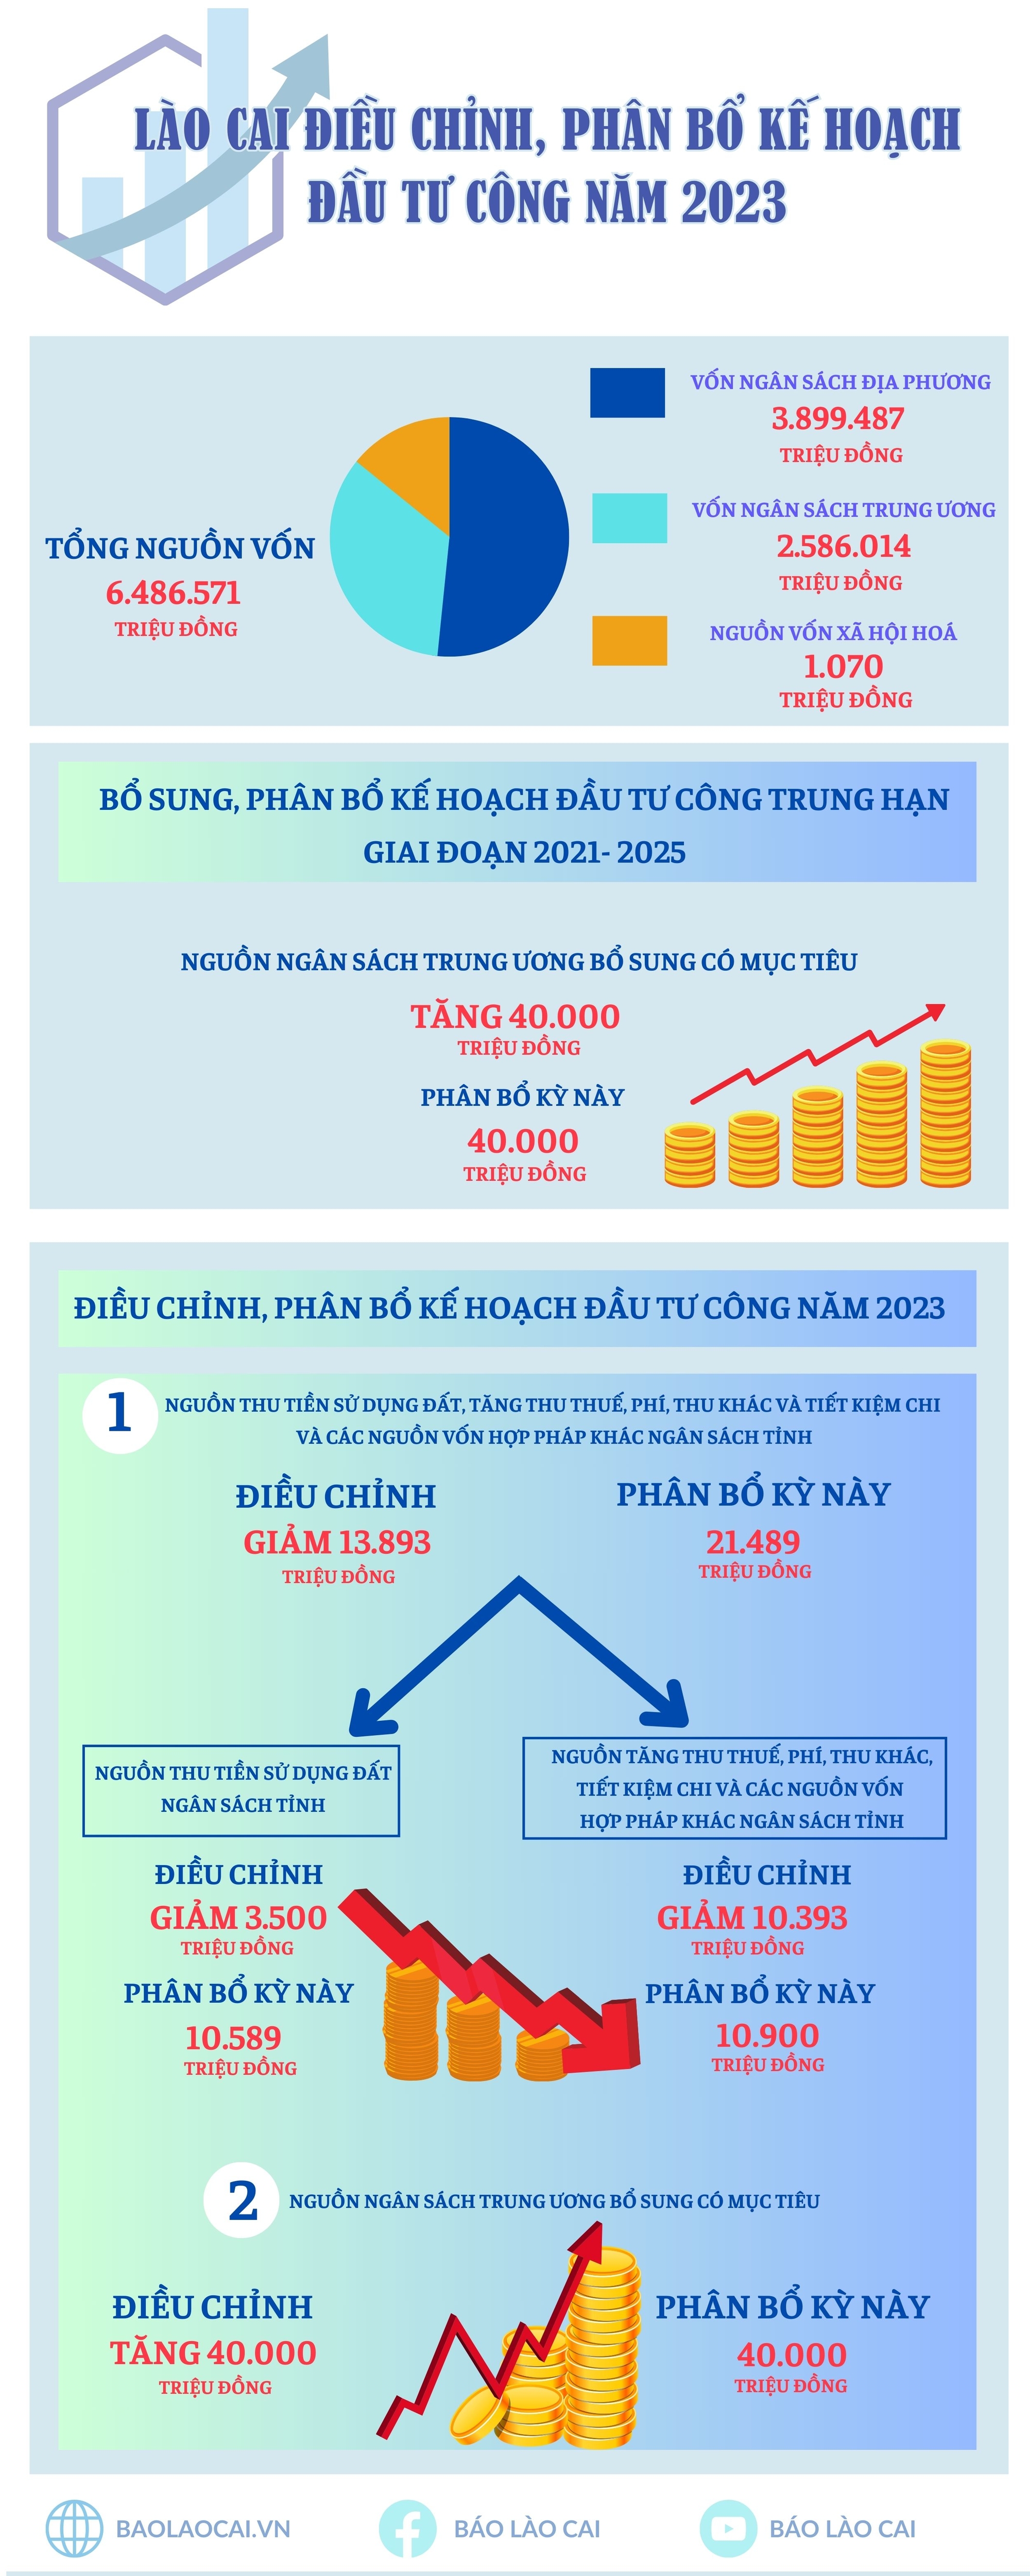 [Infographic] Lào Cai điều chỉnh, phân bổ kế hoạch đầu tư công năm 2023